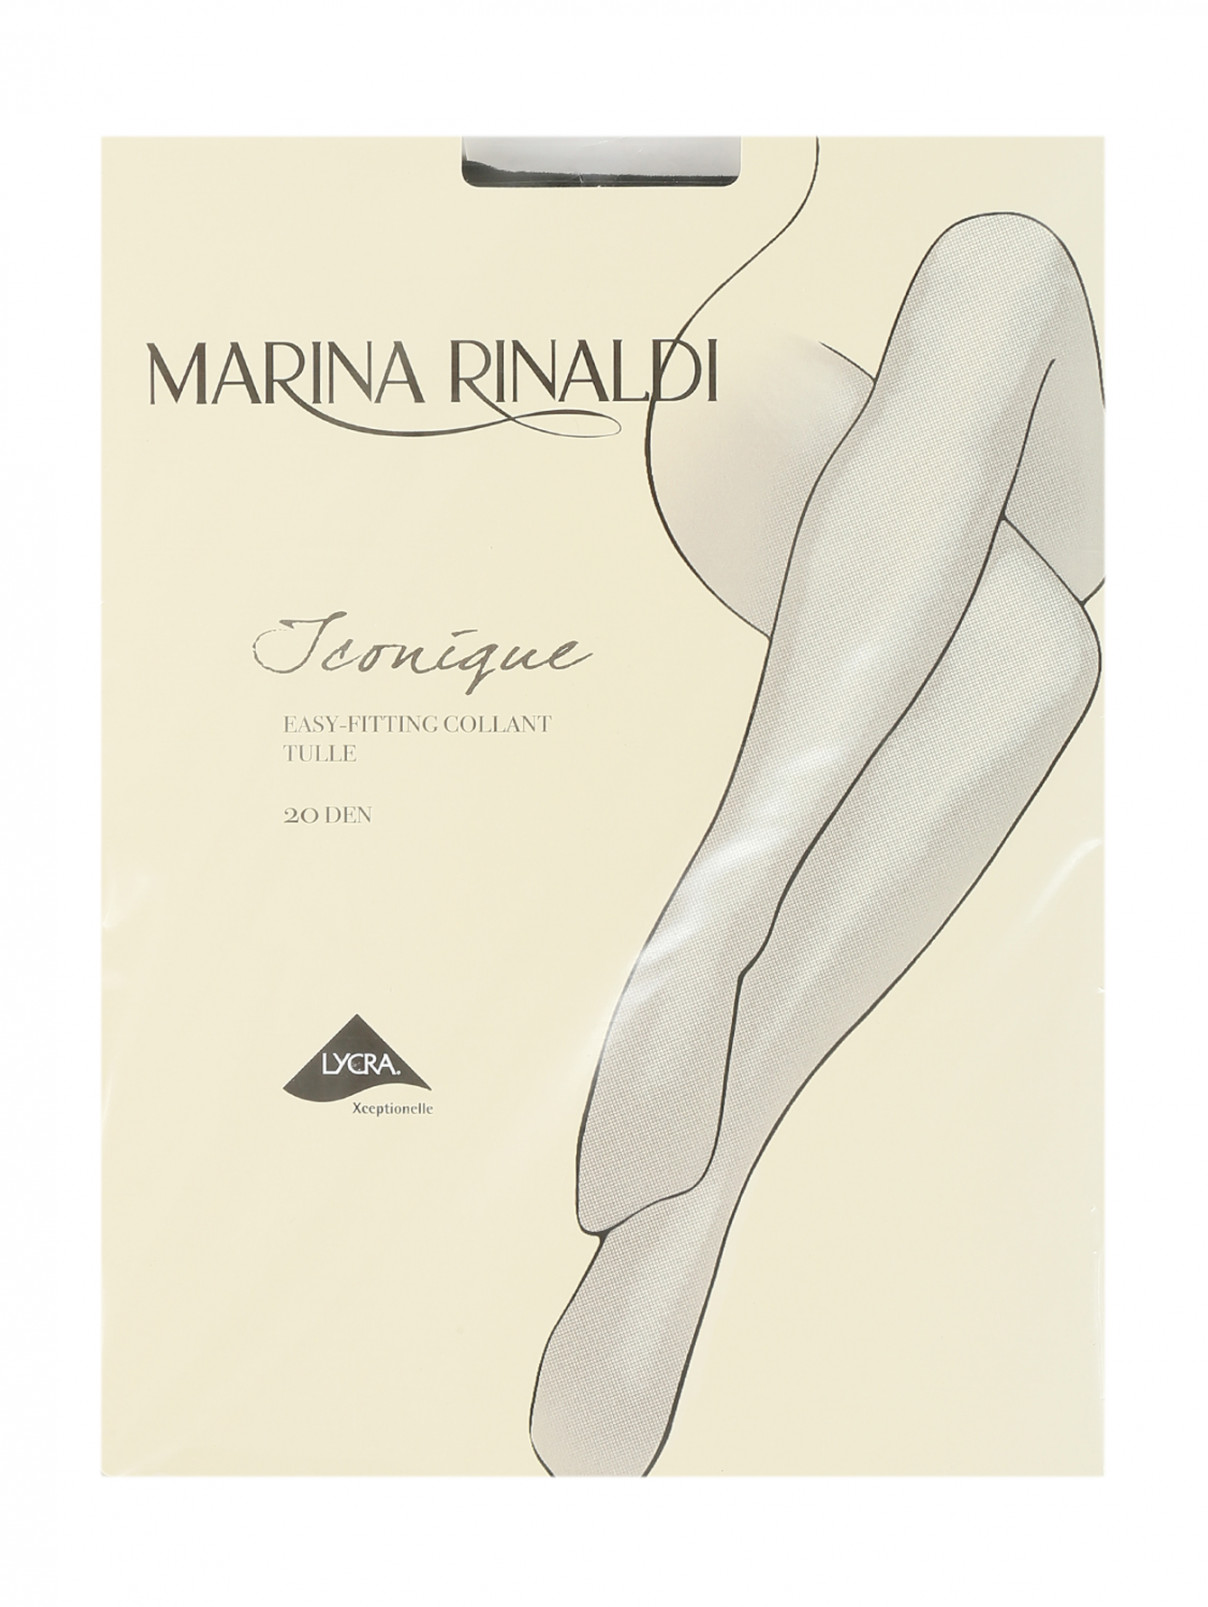 Колготки 20 DEN Marina Rinaldi  –  Общий вид  – Цвет:  Черный